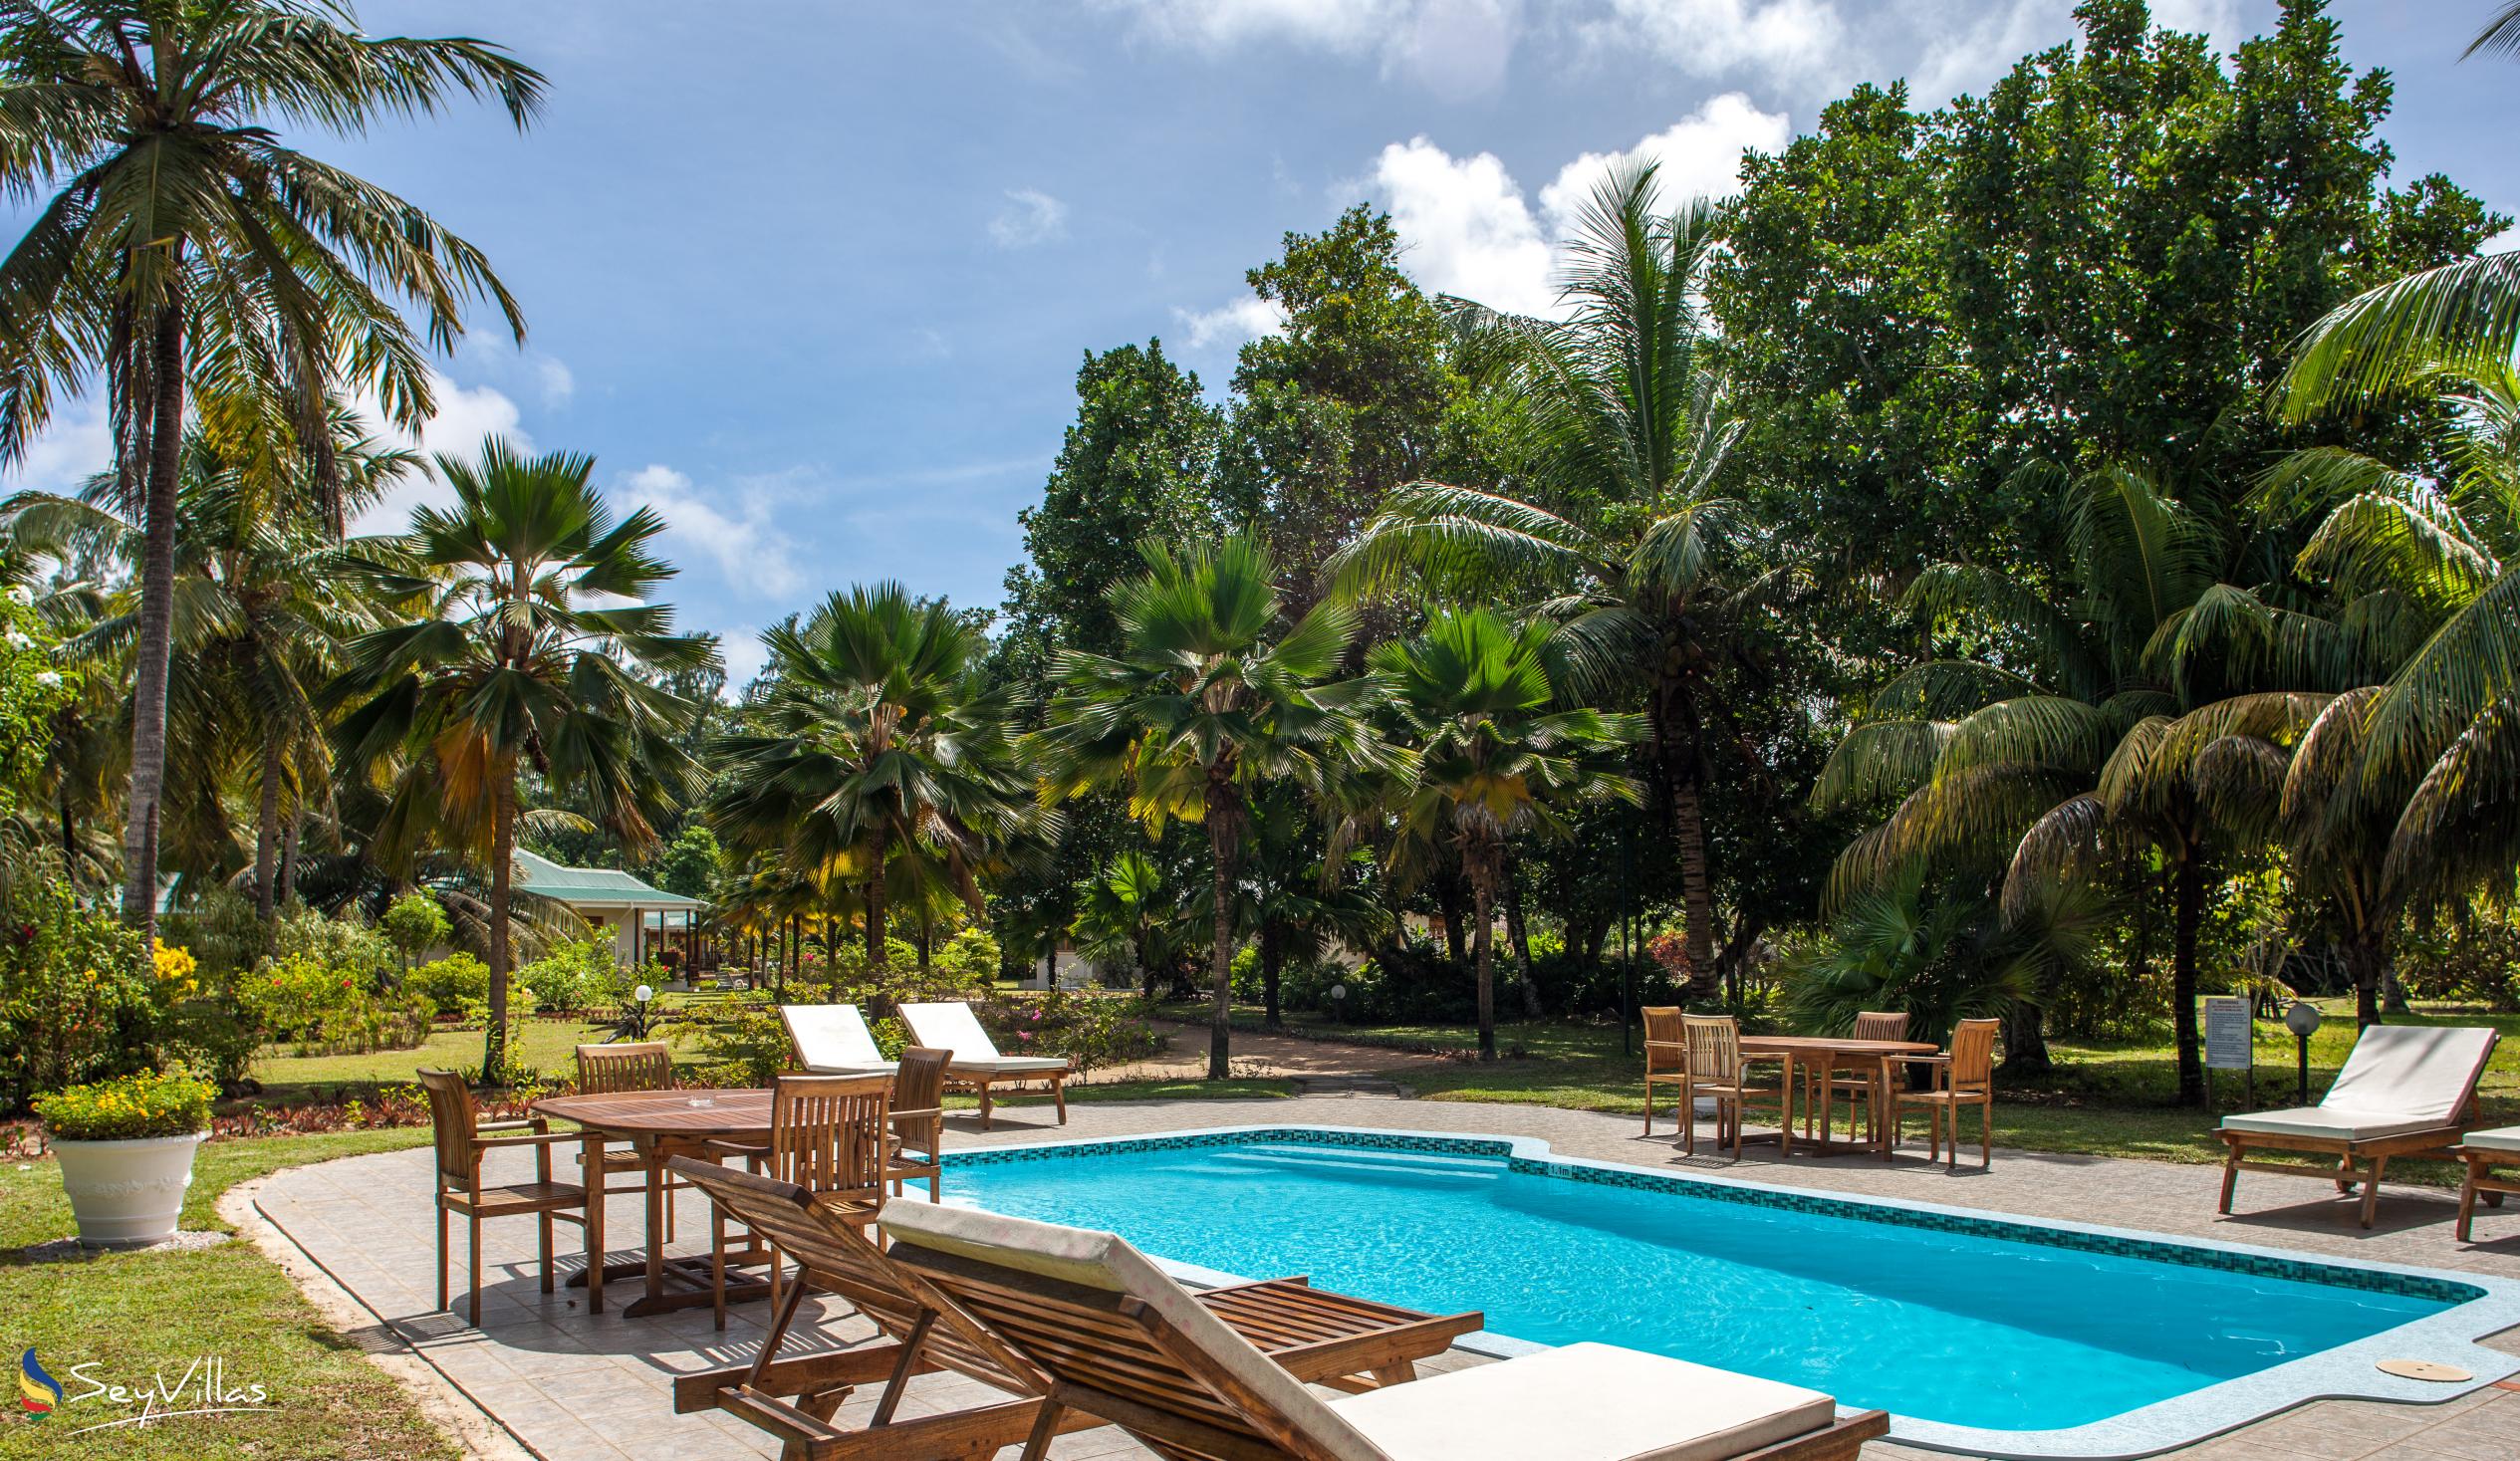 Photo 9: Les Villas D'Or - Outdoor area - Praslin (Seychelles)